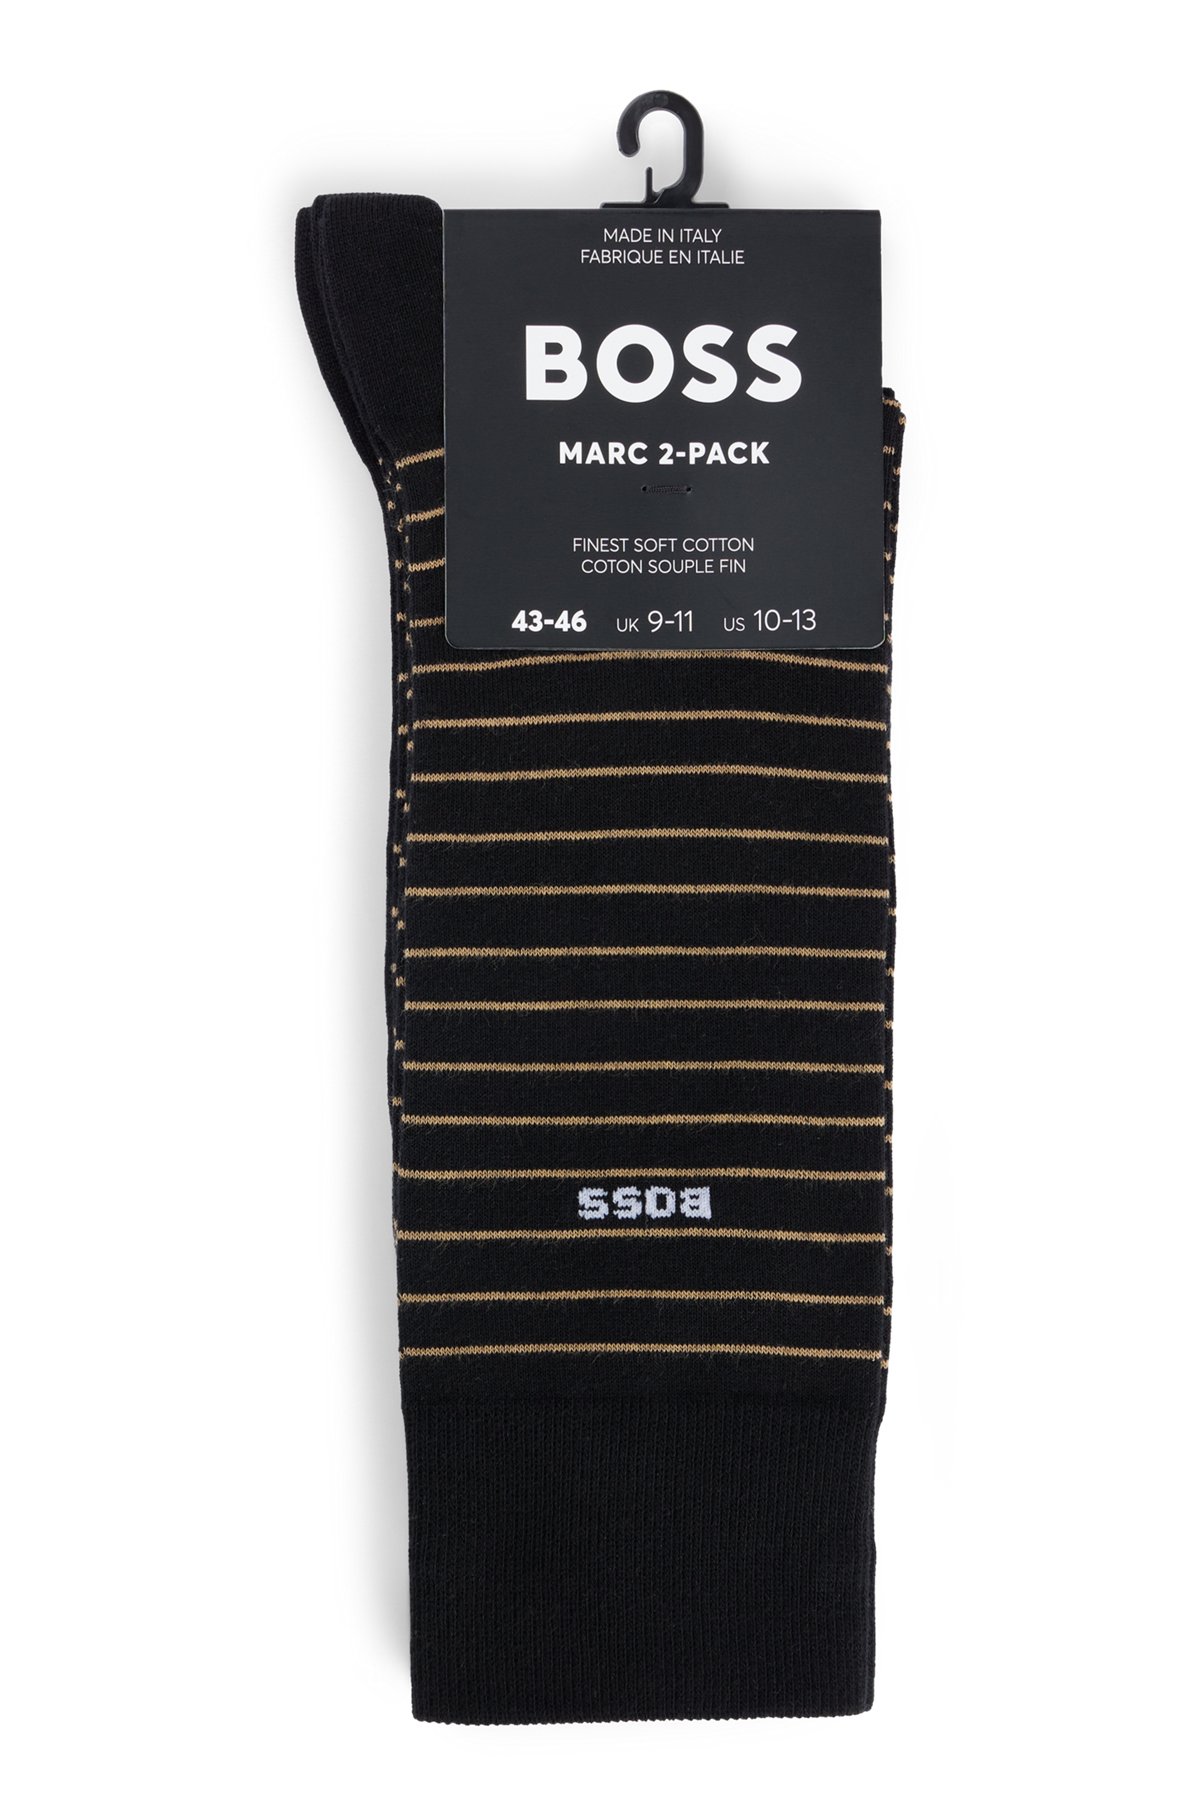 Mittelhohe Socken aus Stretch-Baumwolle im Zweier-Pack, Schwarz